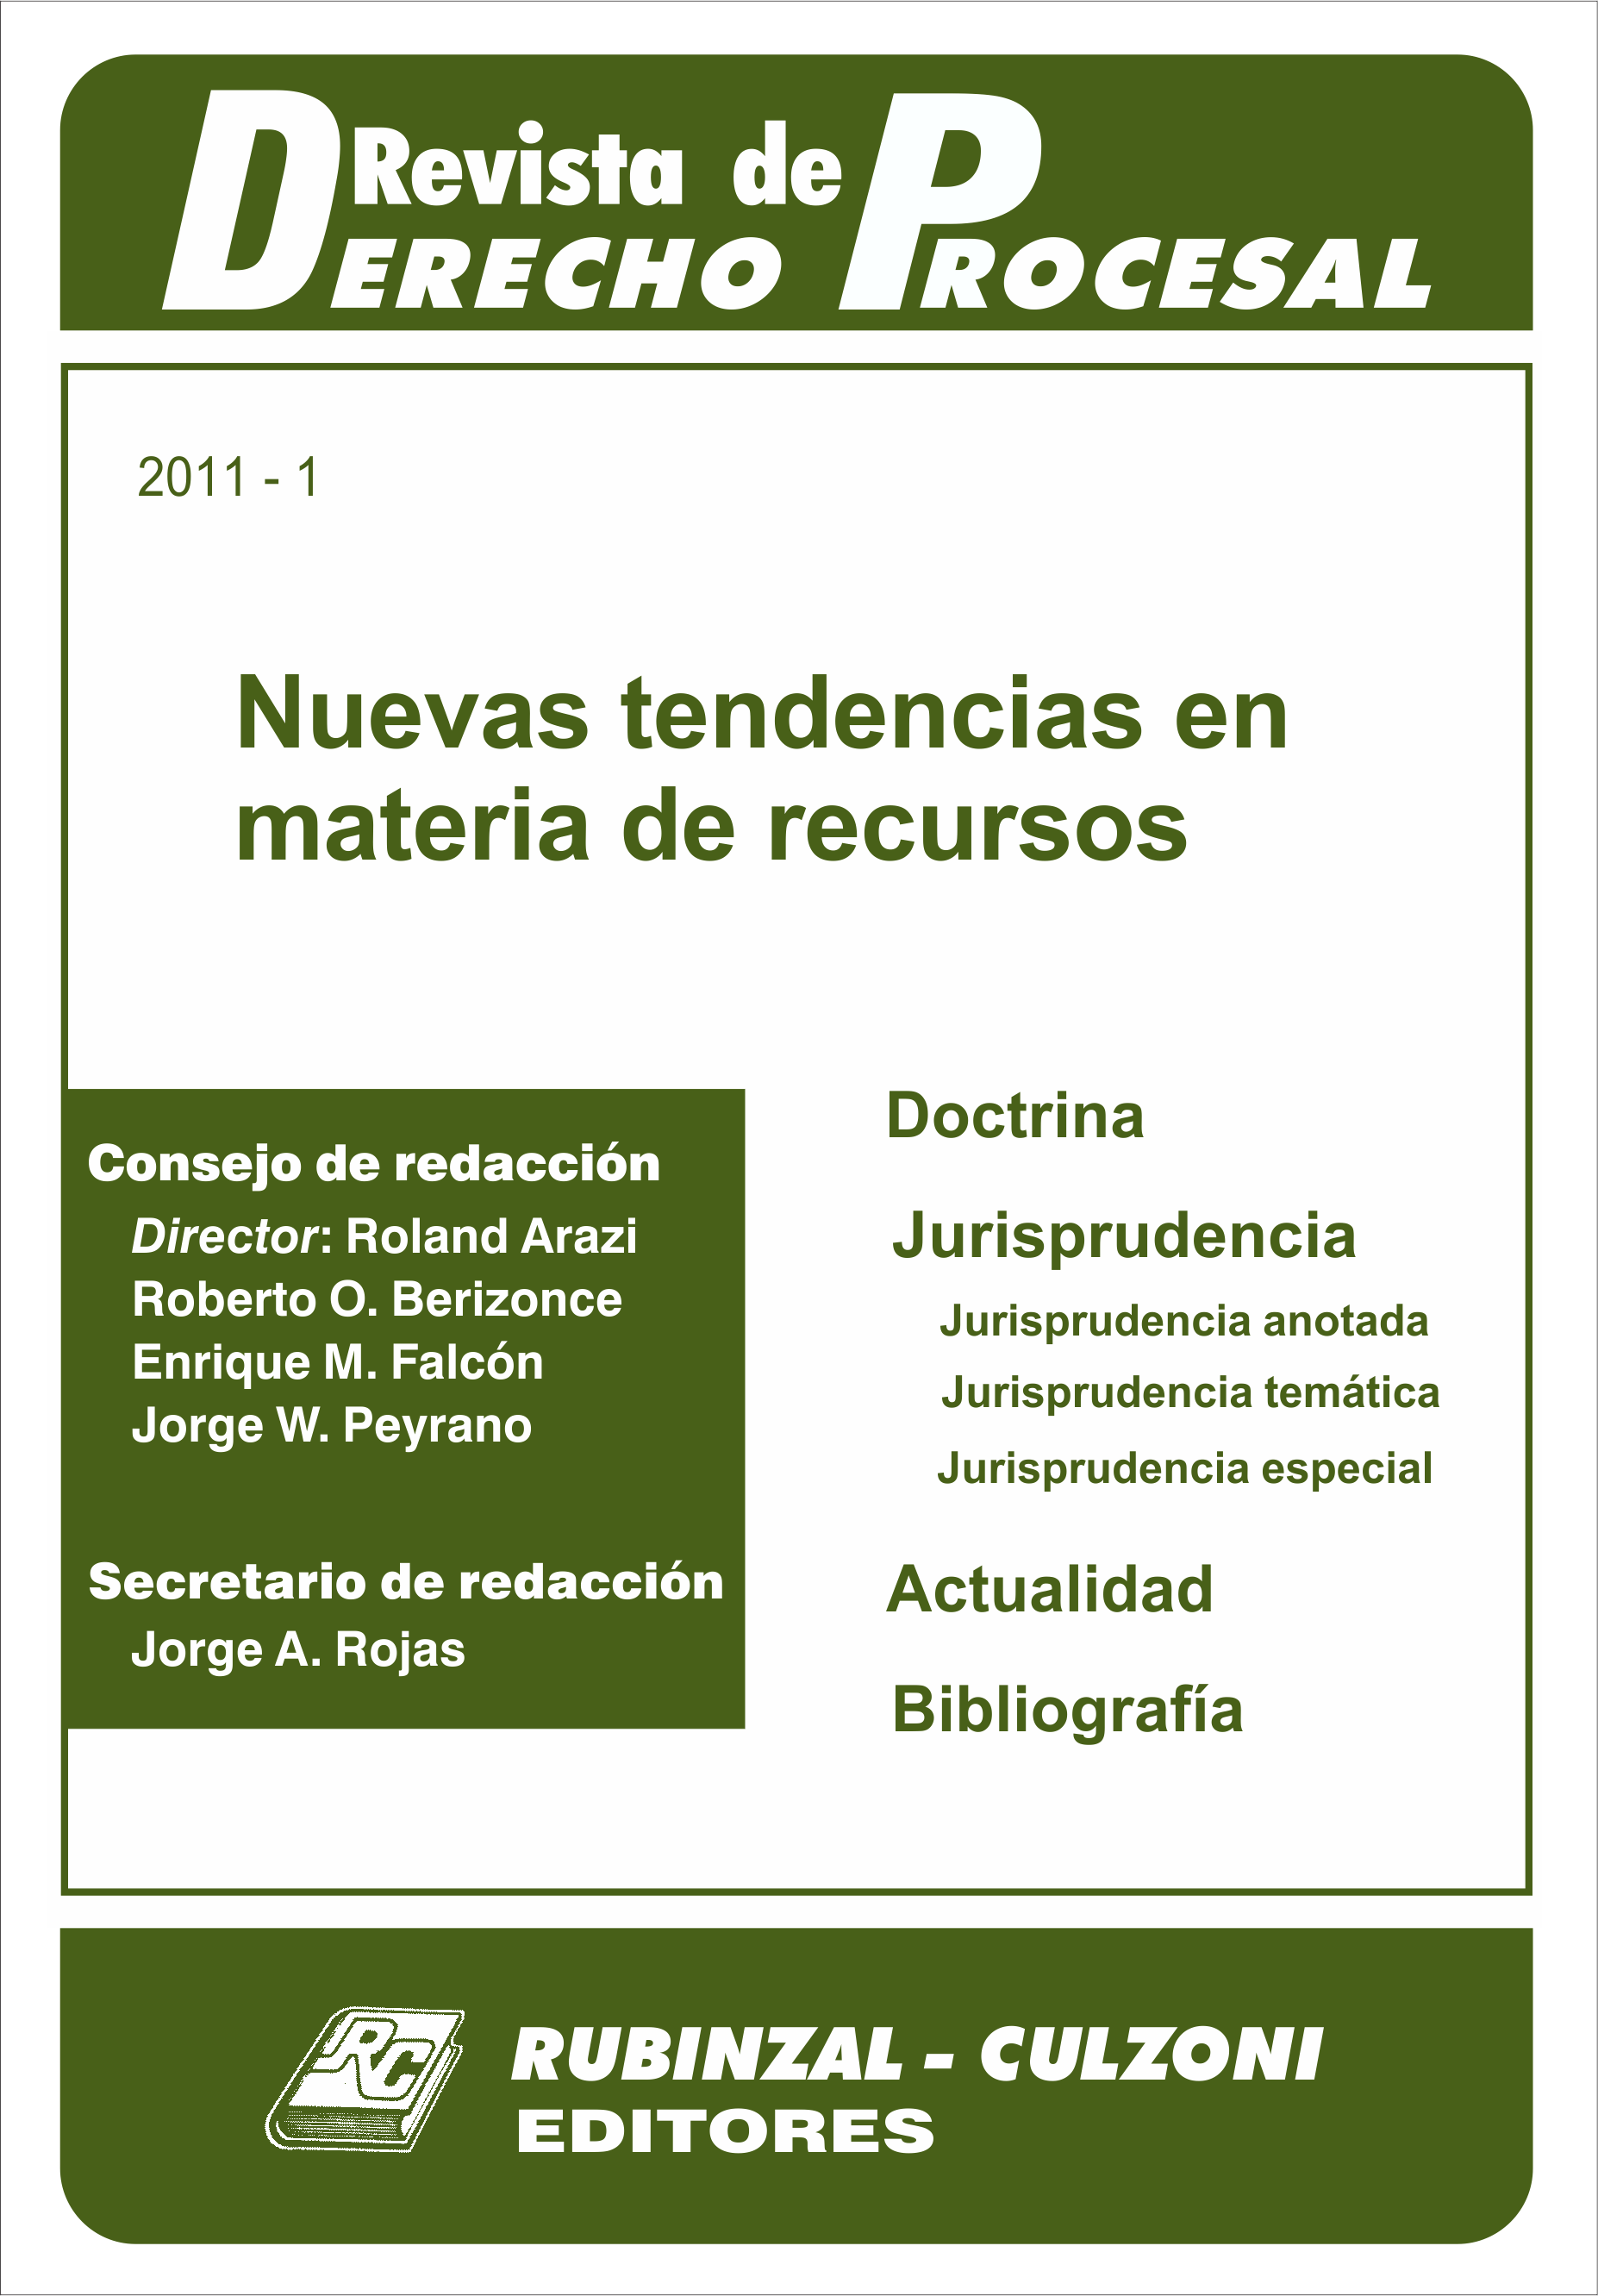 Revista de Derecho Procesal - Nuevas tendencias en materia de recursos